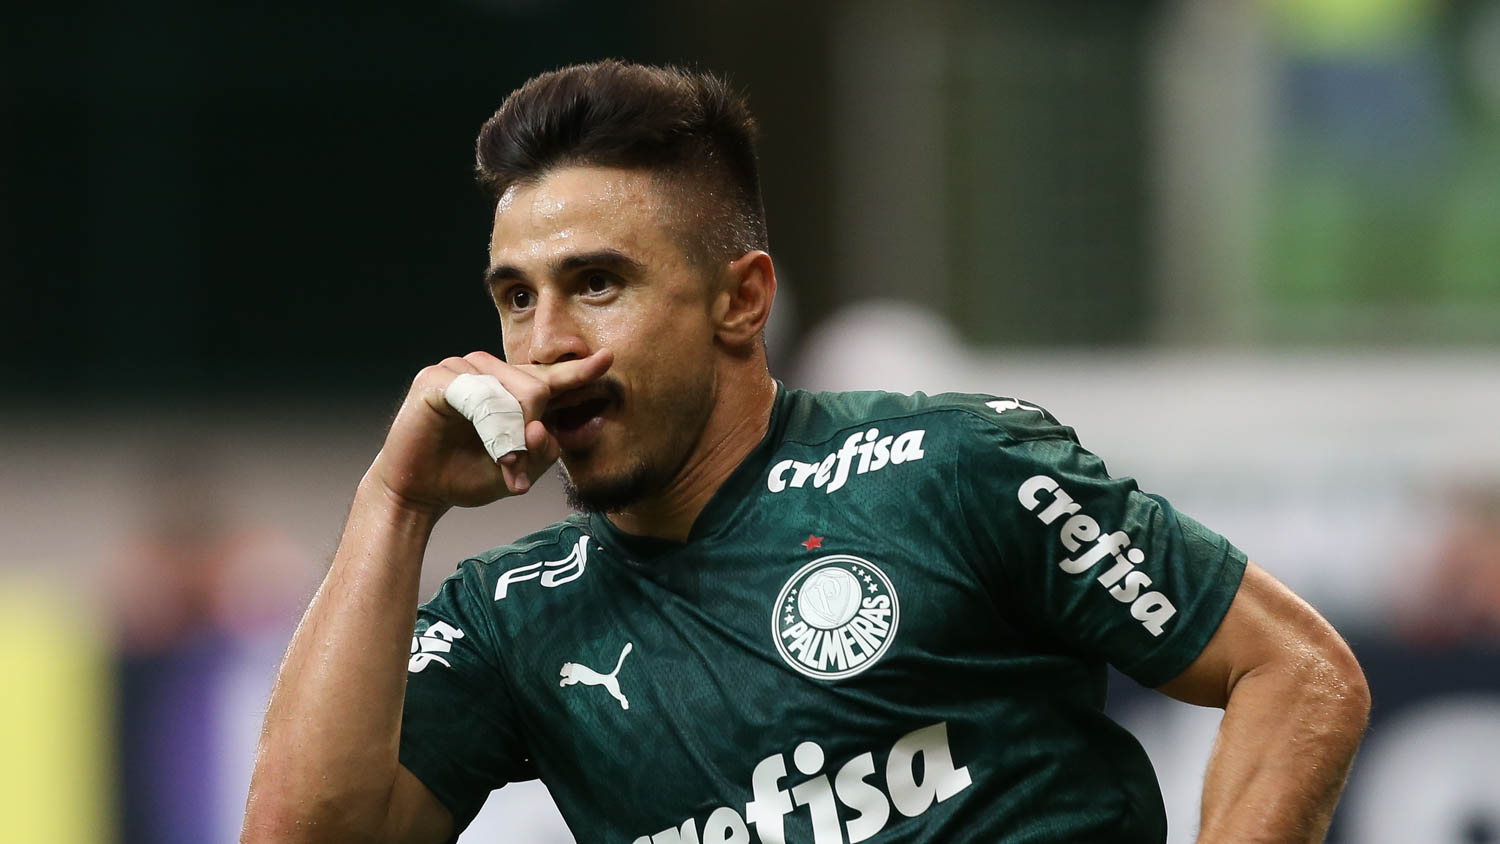 5º - Palmeiras - 69,4% de aproveitamento - 12 jogos: 7 vitórias, 4 empates e 1 derrota